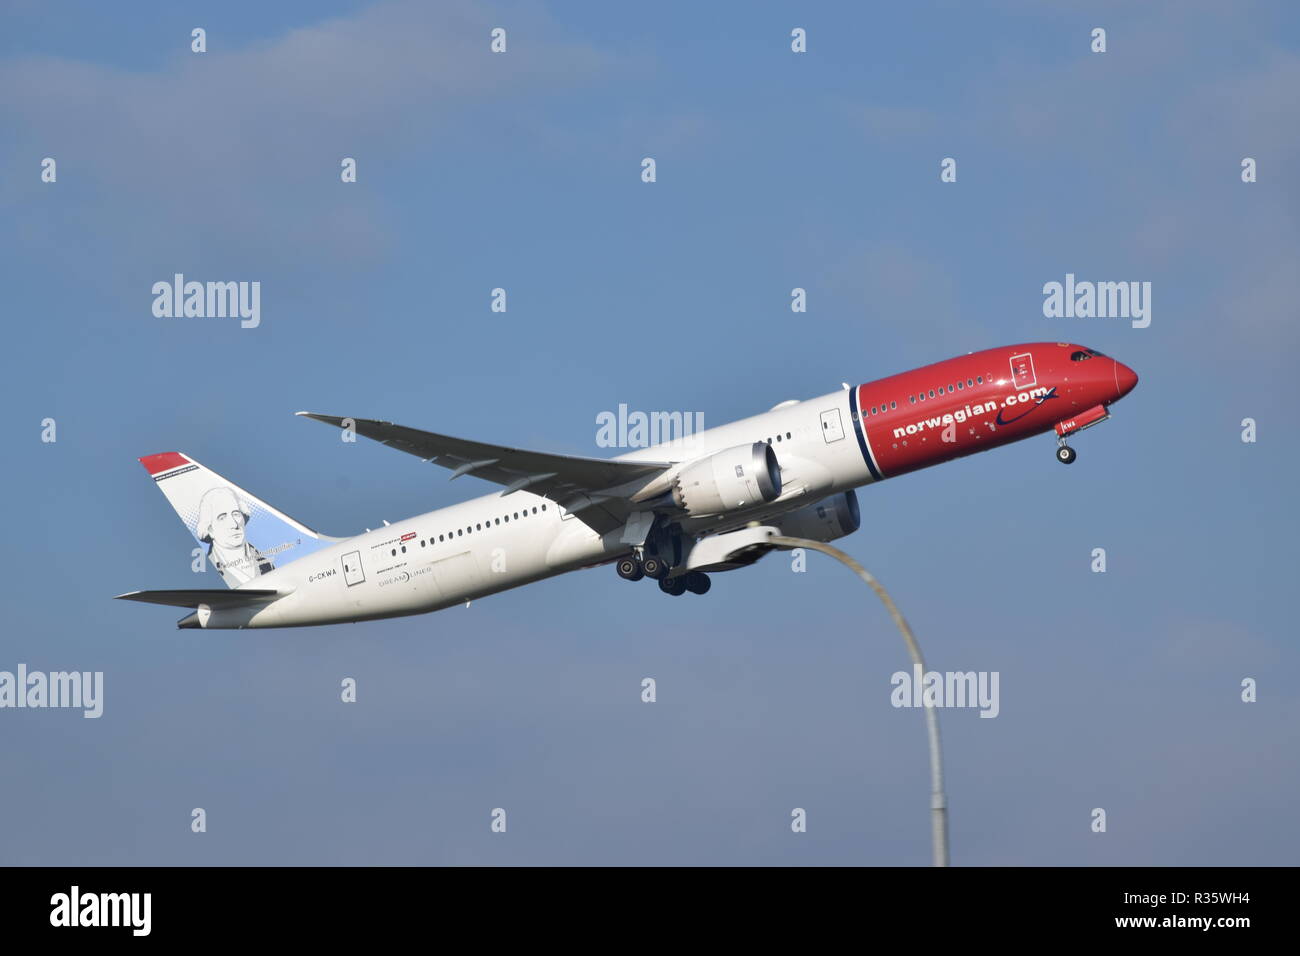 Norwegian.com Airlines 787 + prop Stock Photo